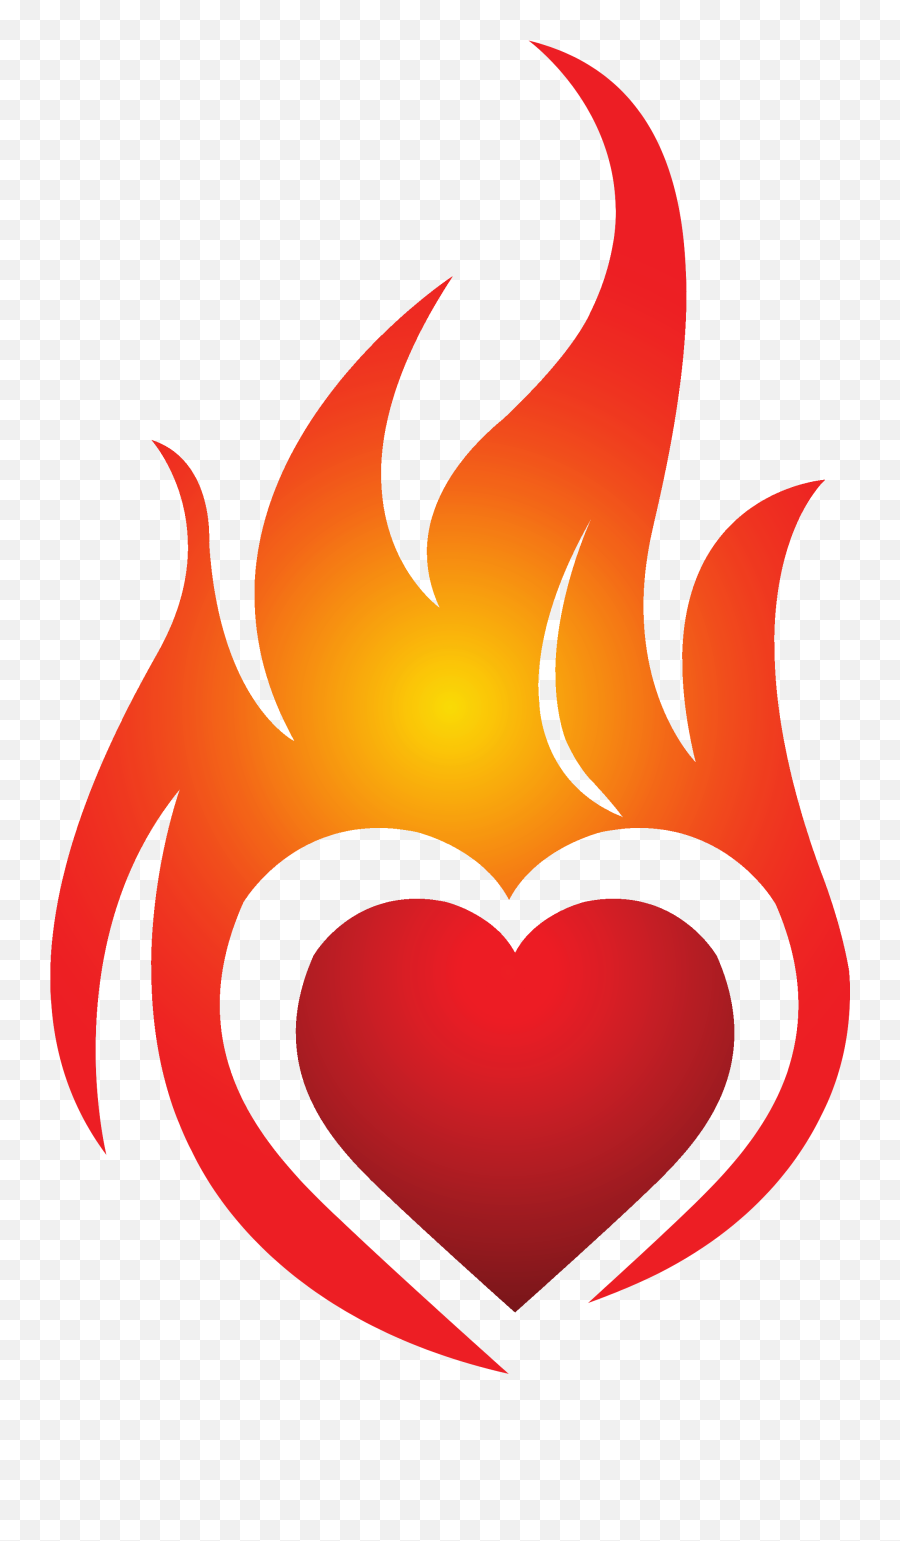 Heart On Fire Jpg Royalty Free Stock - Heart On Fire Clip Art Emoji,Fire Hydrant Emoji